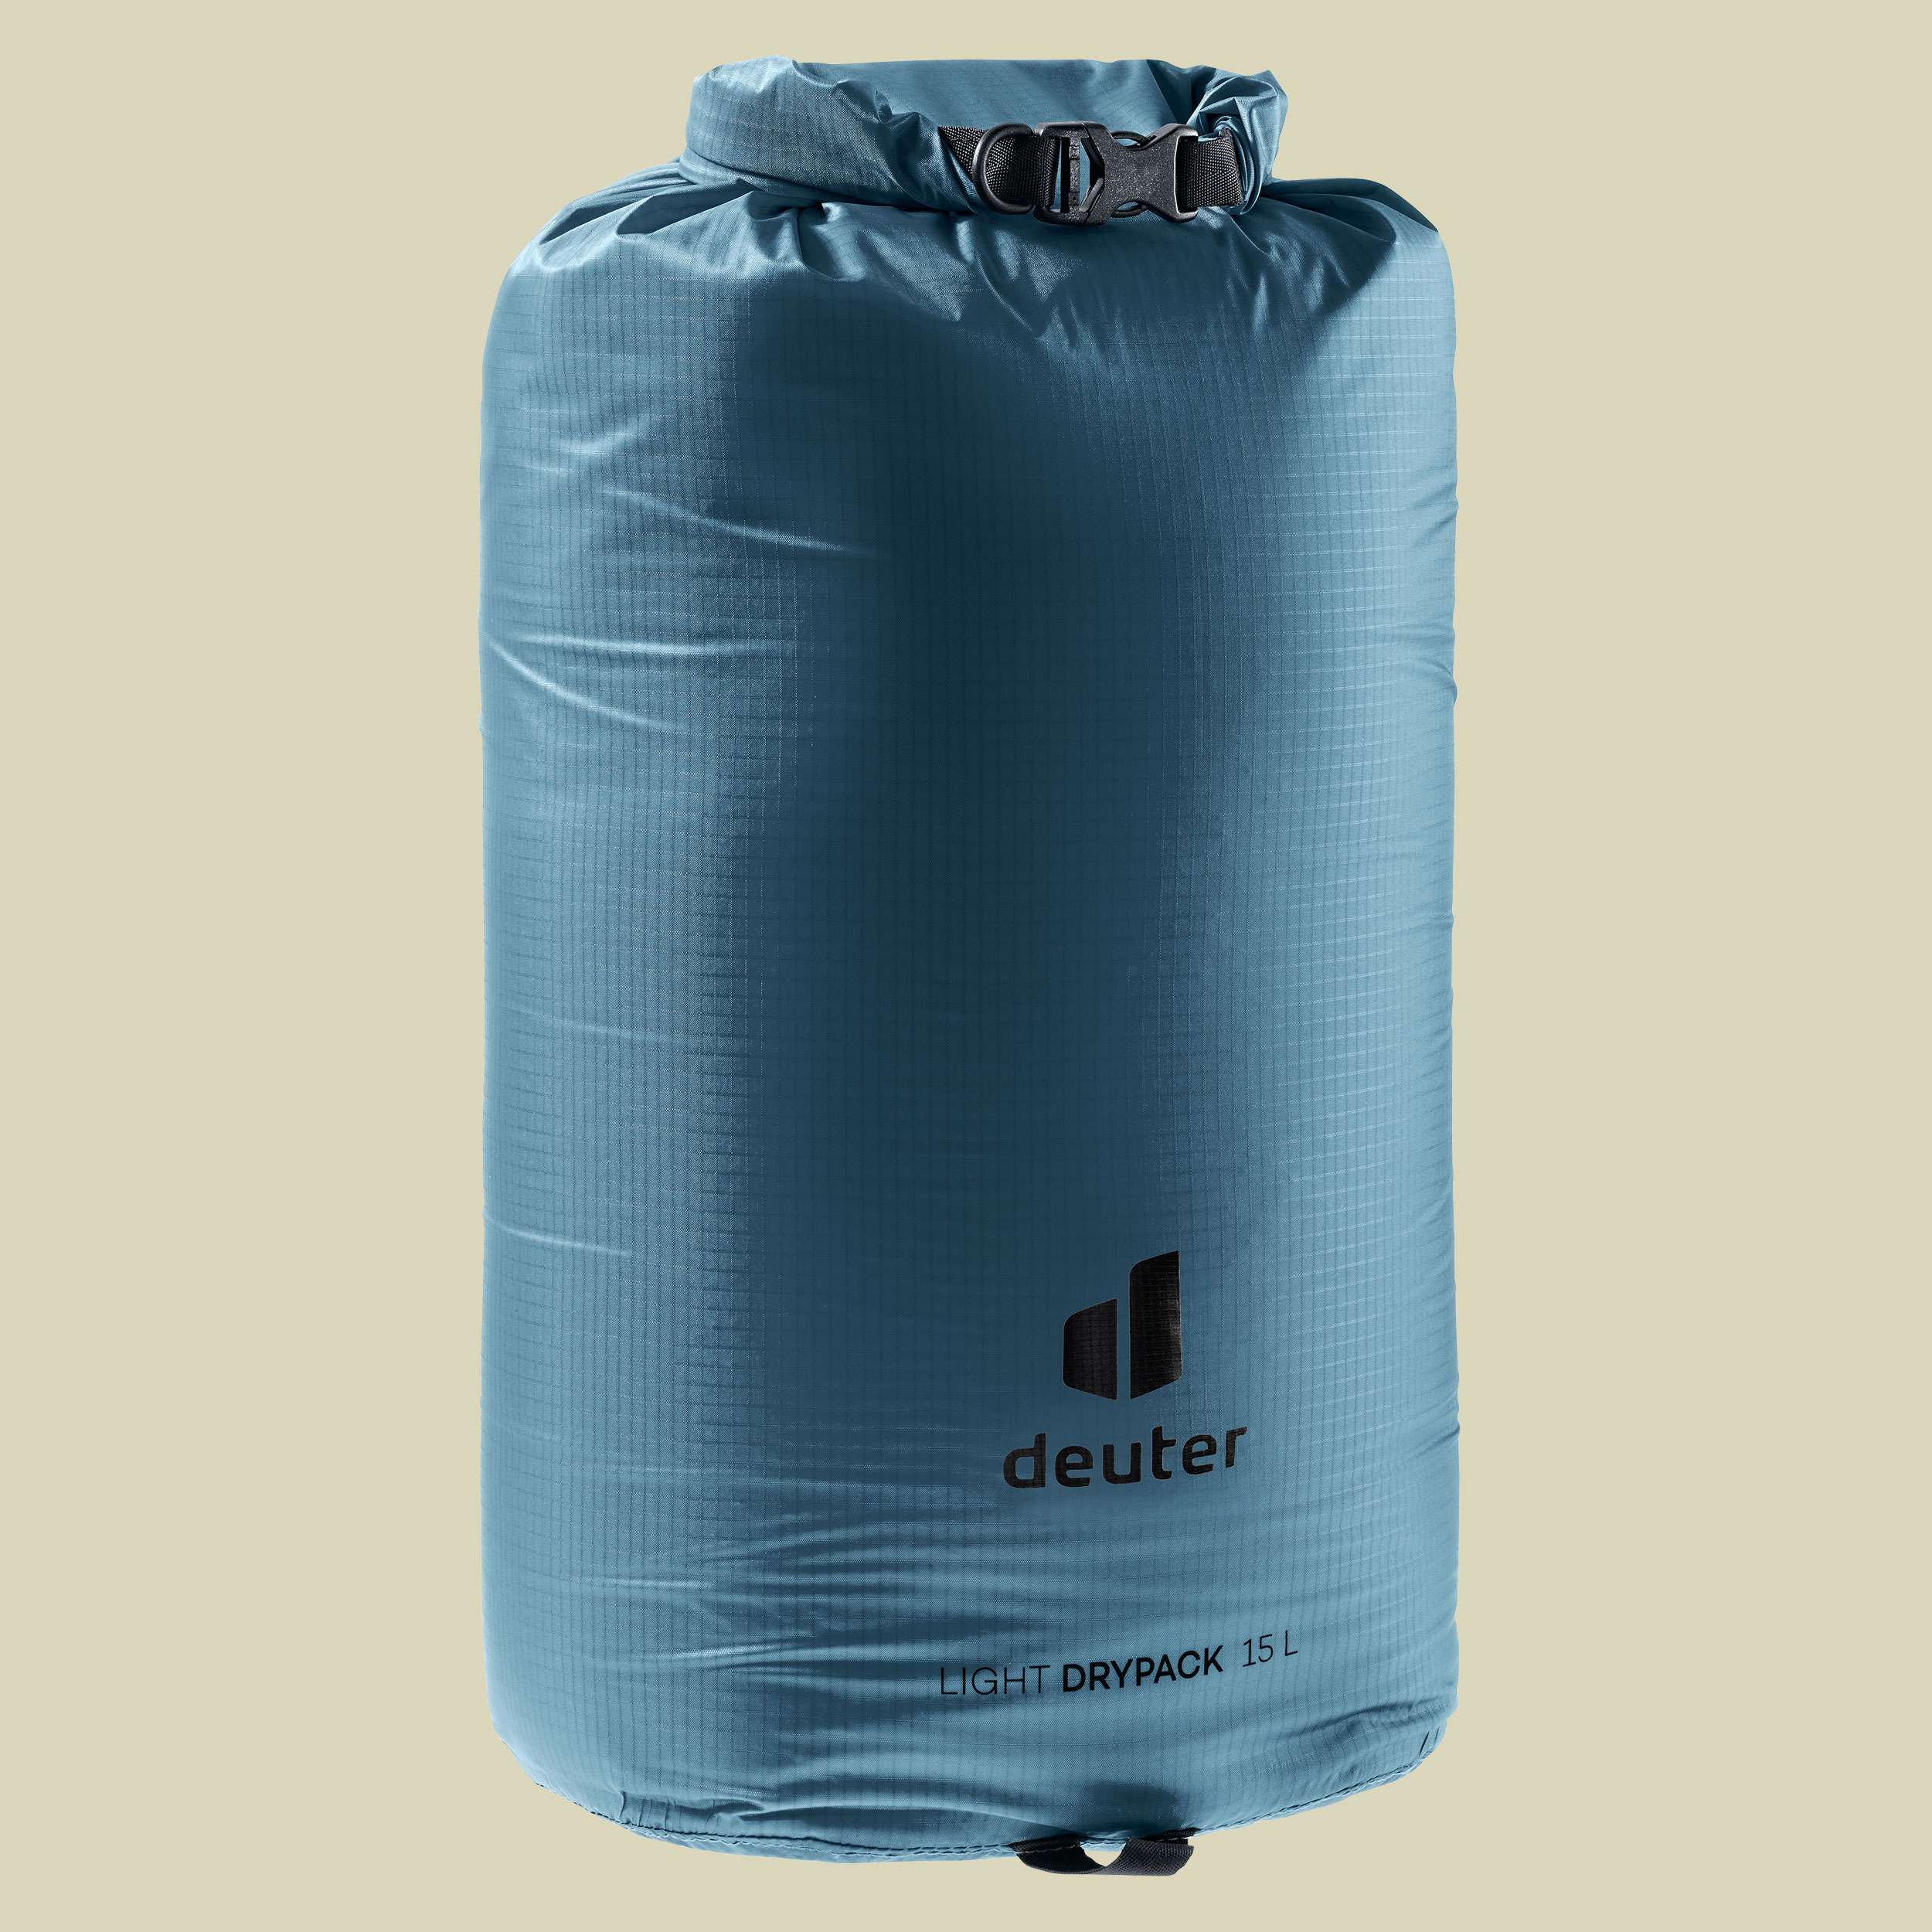 Light Drypack 15 Volumen 15 Liter Farbe atlantic